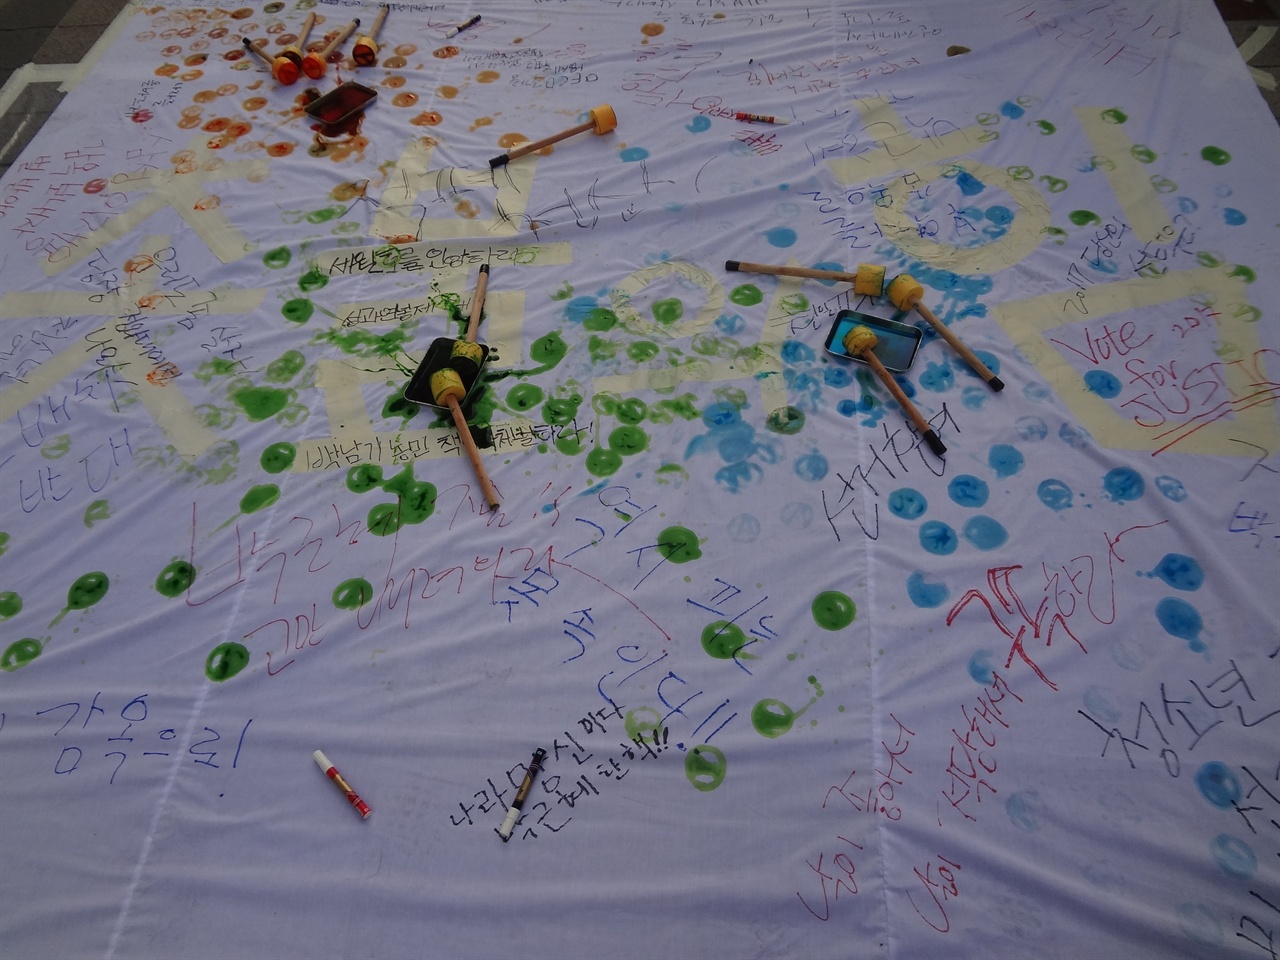 2월 4일, 울산시민대회에서 피켓꾸미는 행사를 진행하고 있었다. 